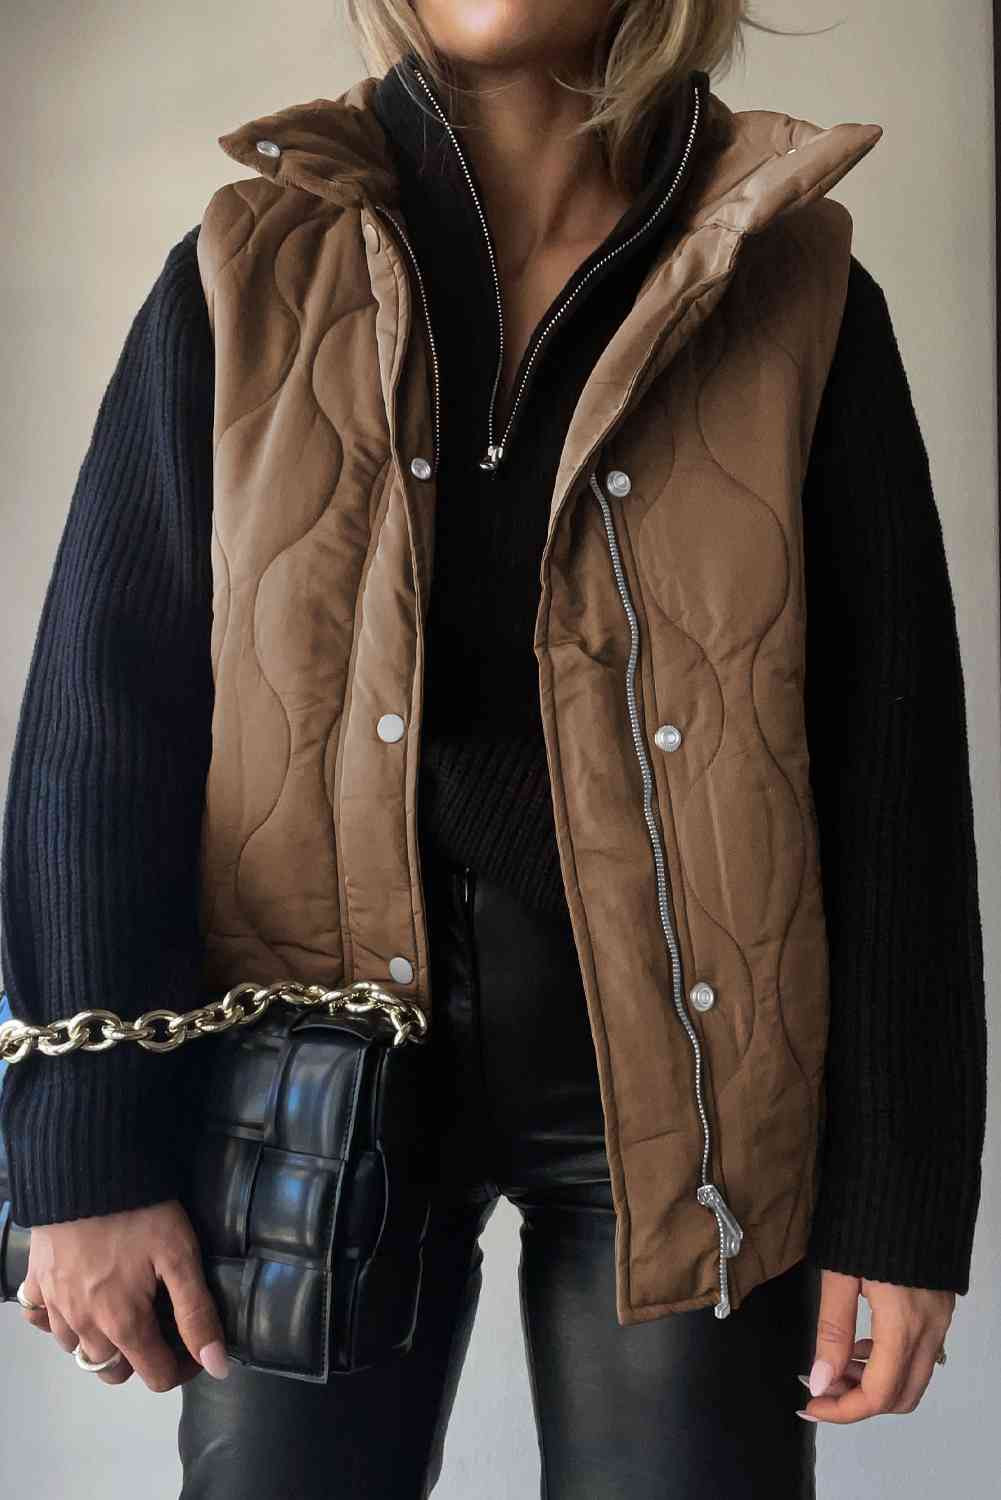 Collared Neck Vest with Pockets - TiffanyzKlozet